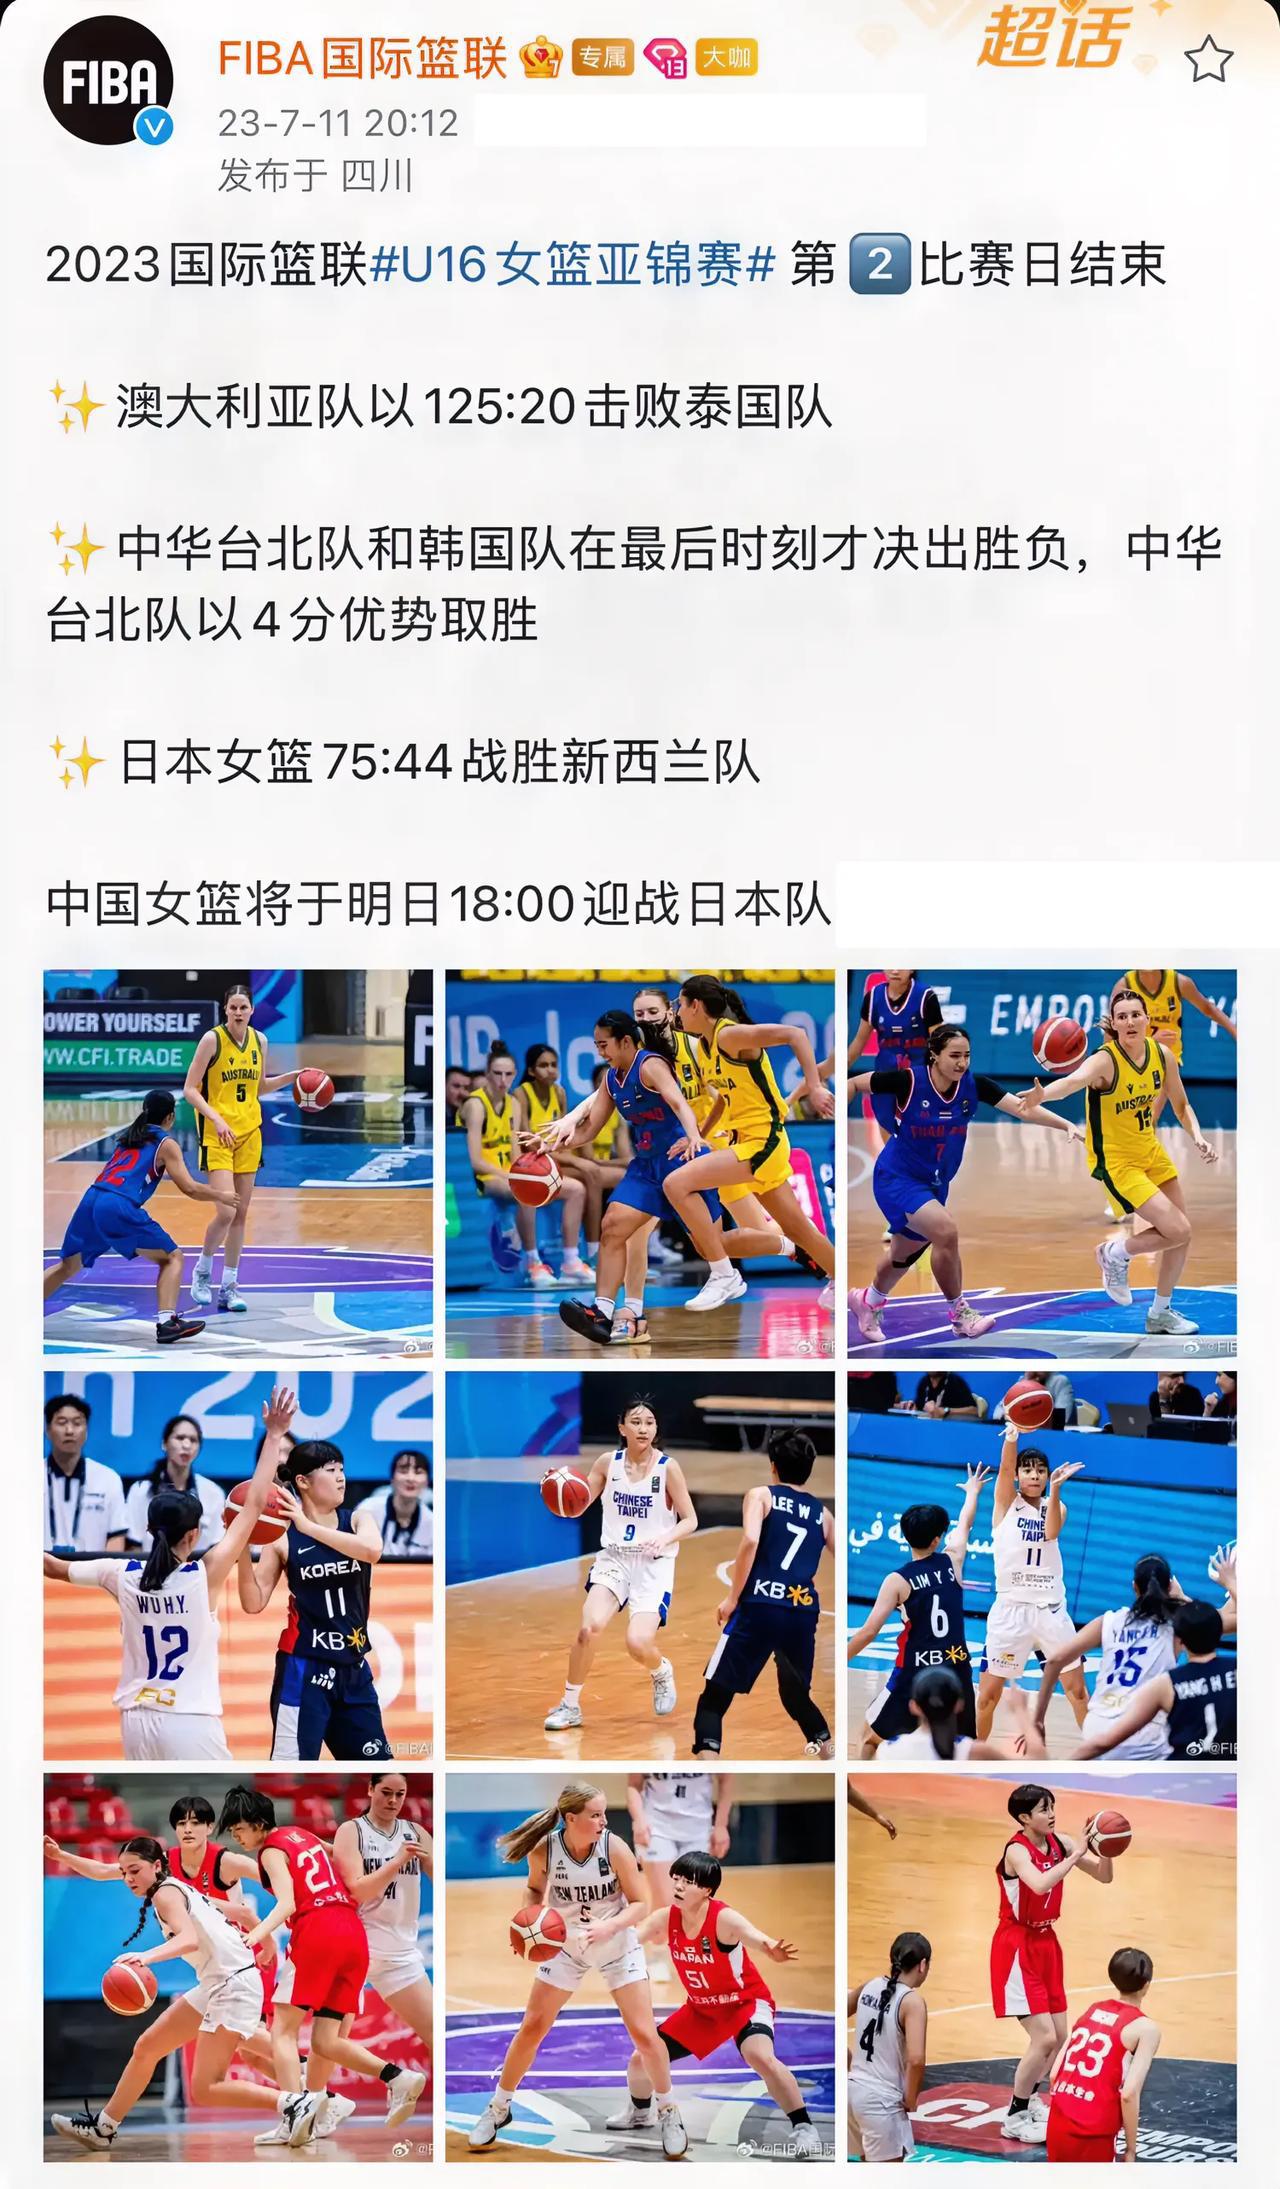 国际赛事，澳大利亚女篮125-20泰国女篮，这过百的分差可以载入史册。(1)